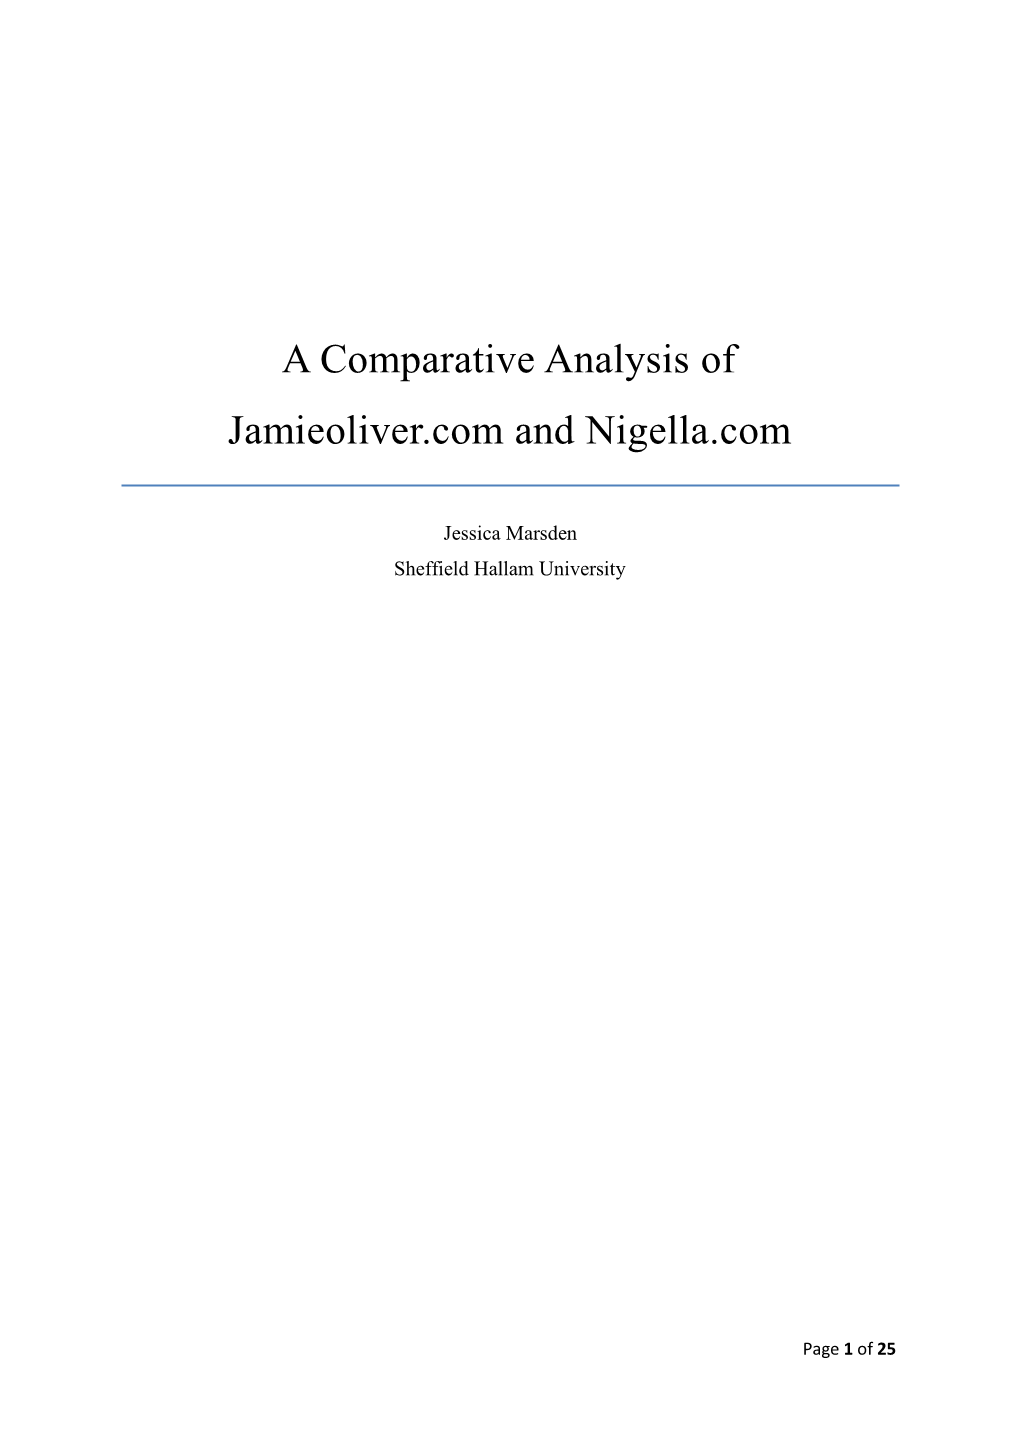 A Comparative Analysis of Jamieoliver.Com and Nigella.Com